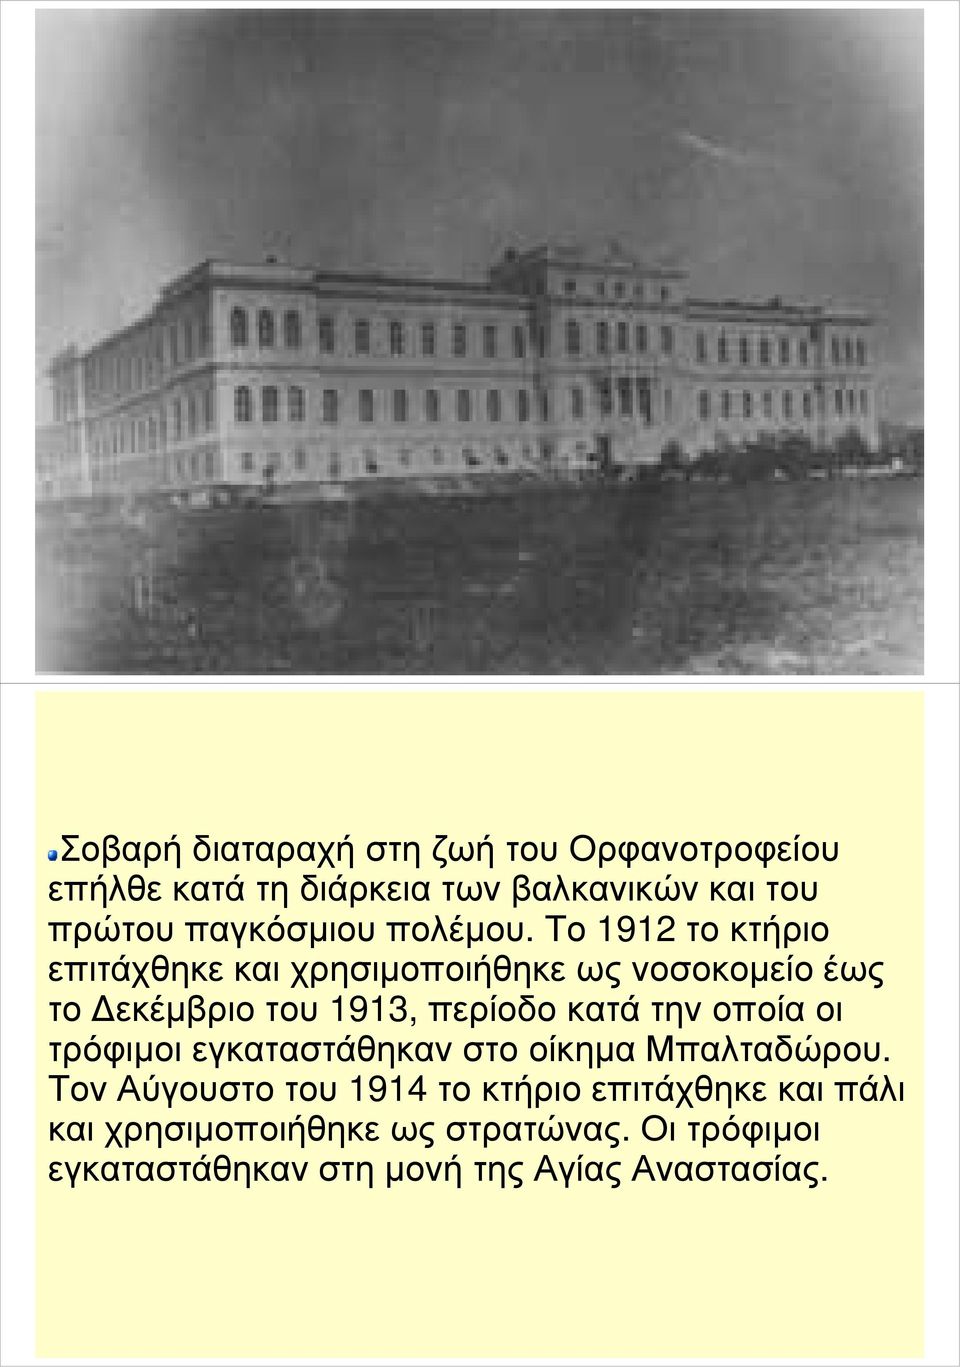 Το 1912 το κτήριο επιτάχθηκε και χρησιµοποιήθηκε ως νοσοκοµείο έως το εκέµβριο του 1913, περίοδο κατά την